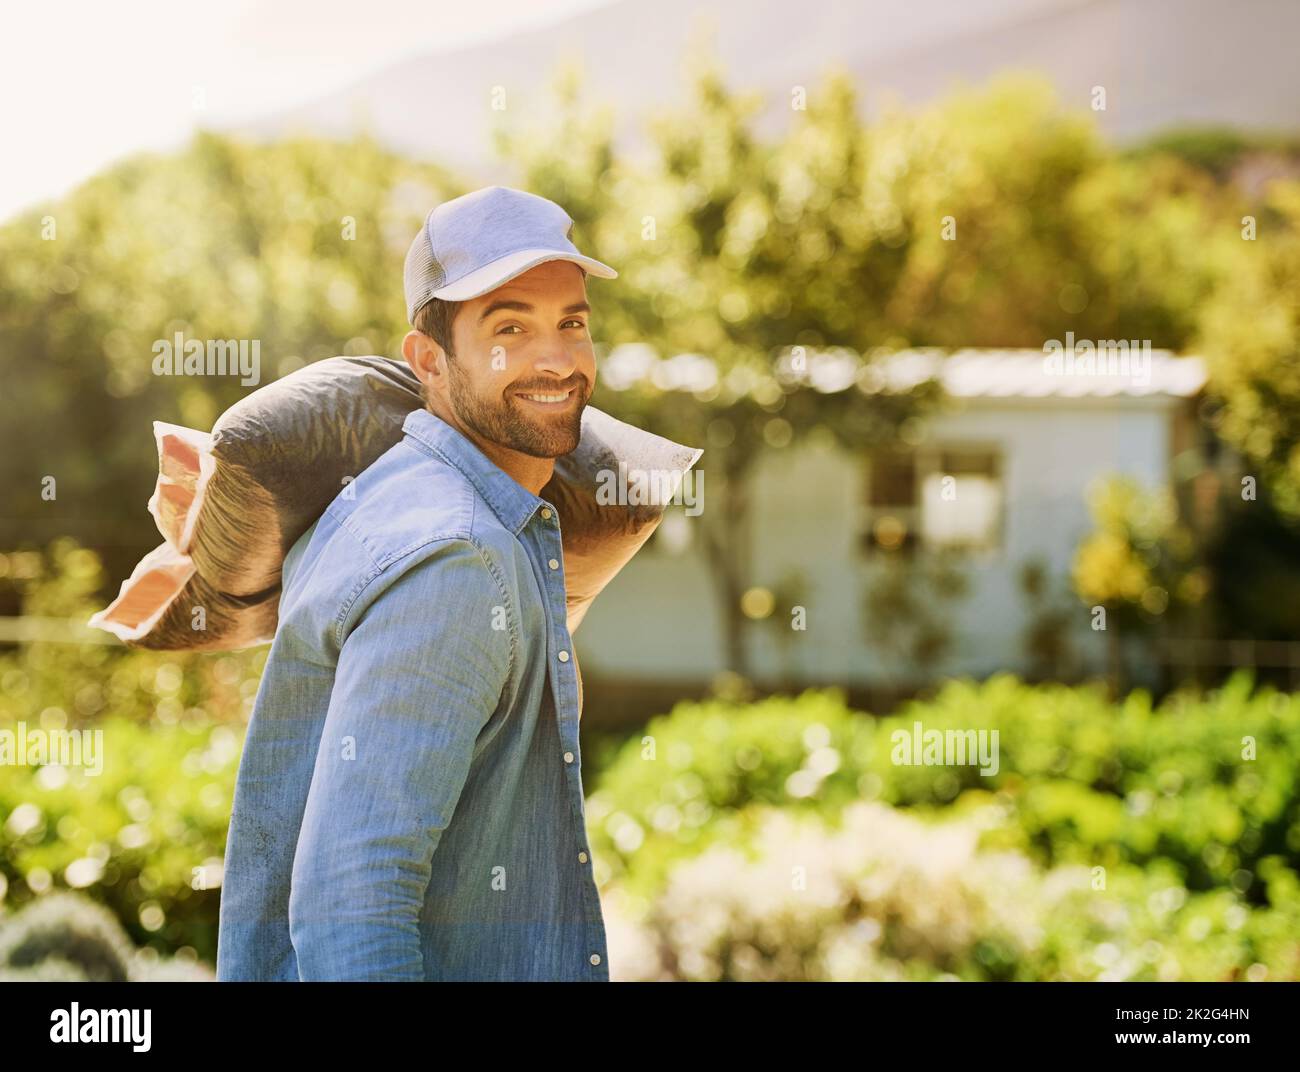 Ich habe keine Angst, meine Hände schmutzig zu machen. Porträt eines glücklichen jungen Bauern, der eine Tasche Kompost über seine Schulter auf dem Bauernhof trägt. Stockfoto